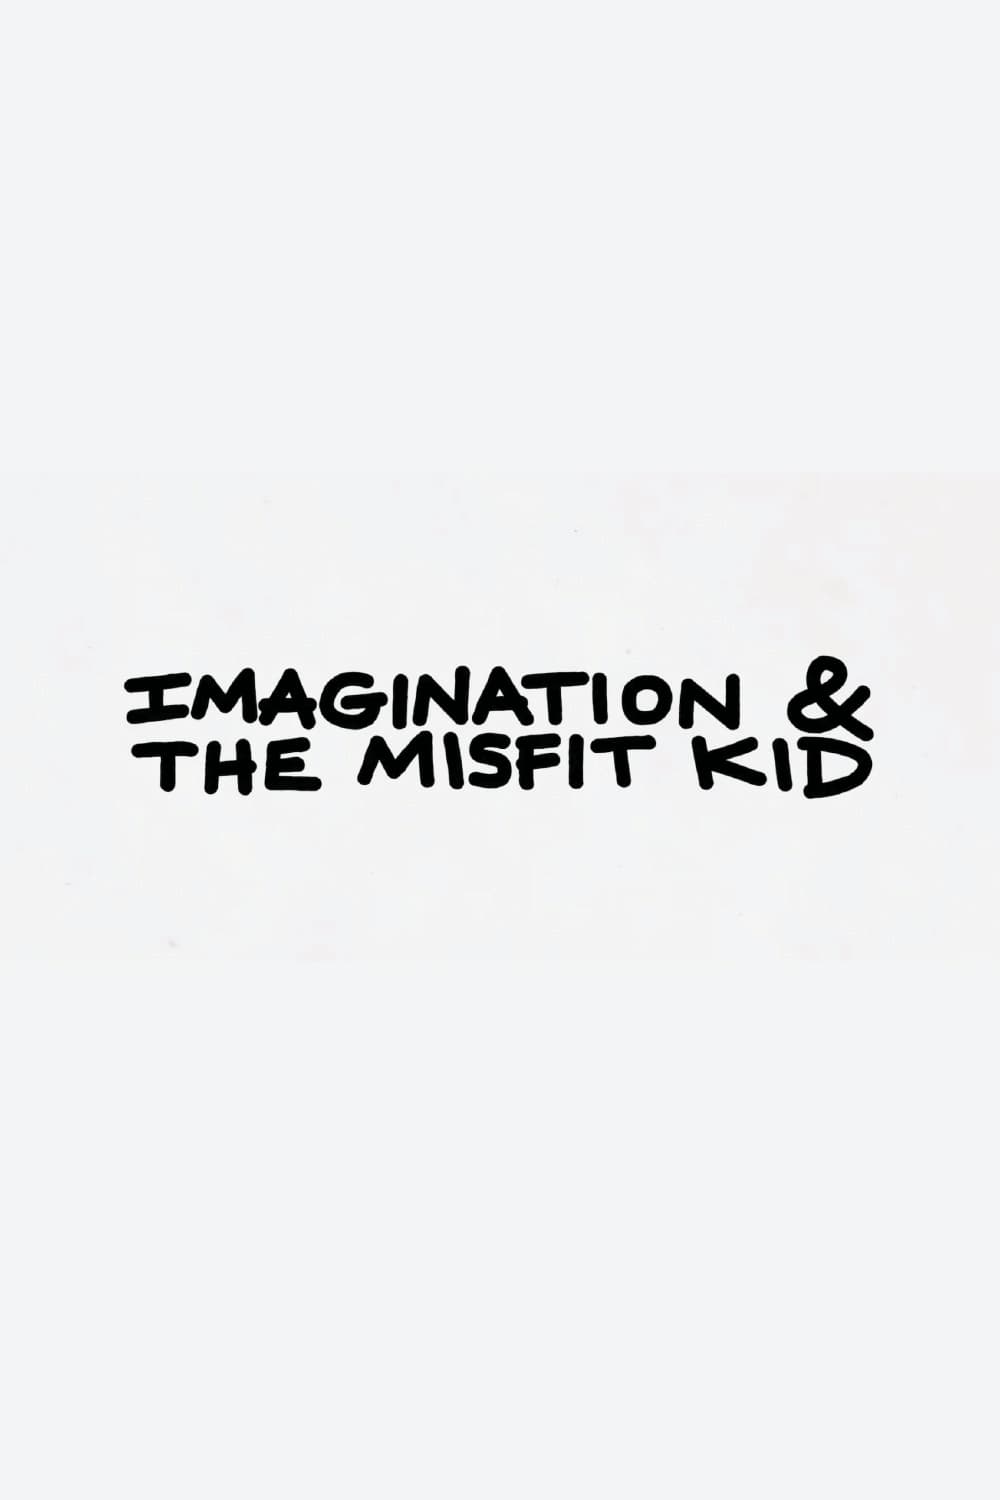 Imagination & the Misfit Kid